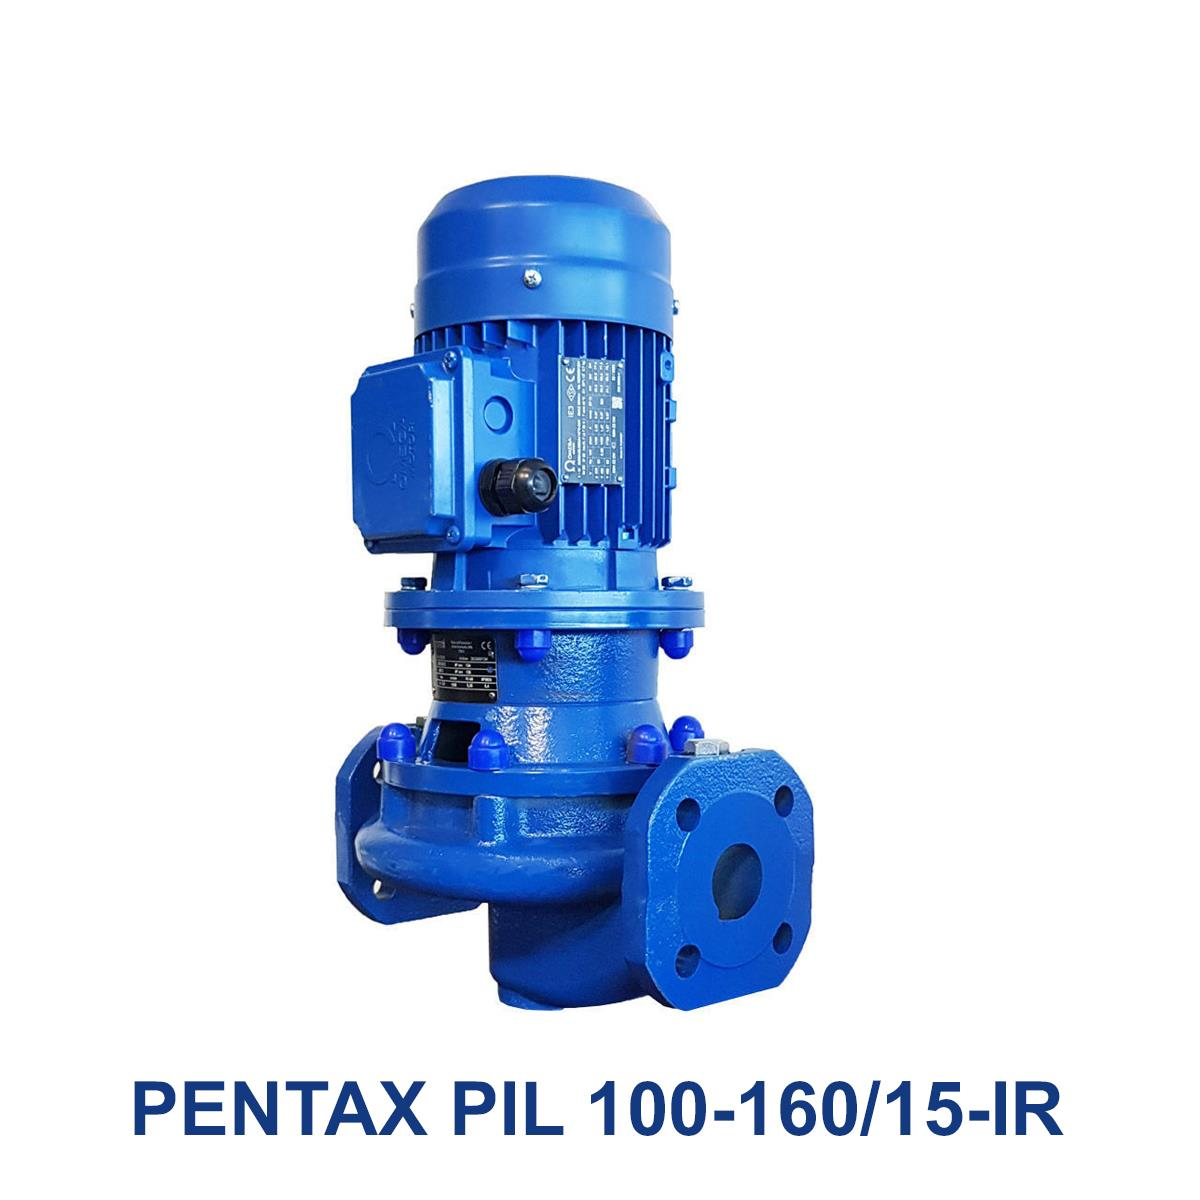 PENTAX-PIL-100-160-15-IR